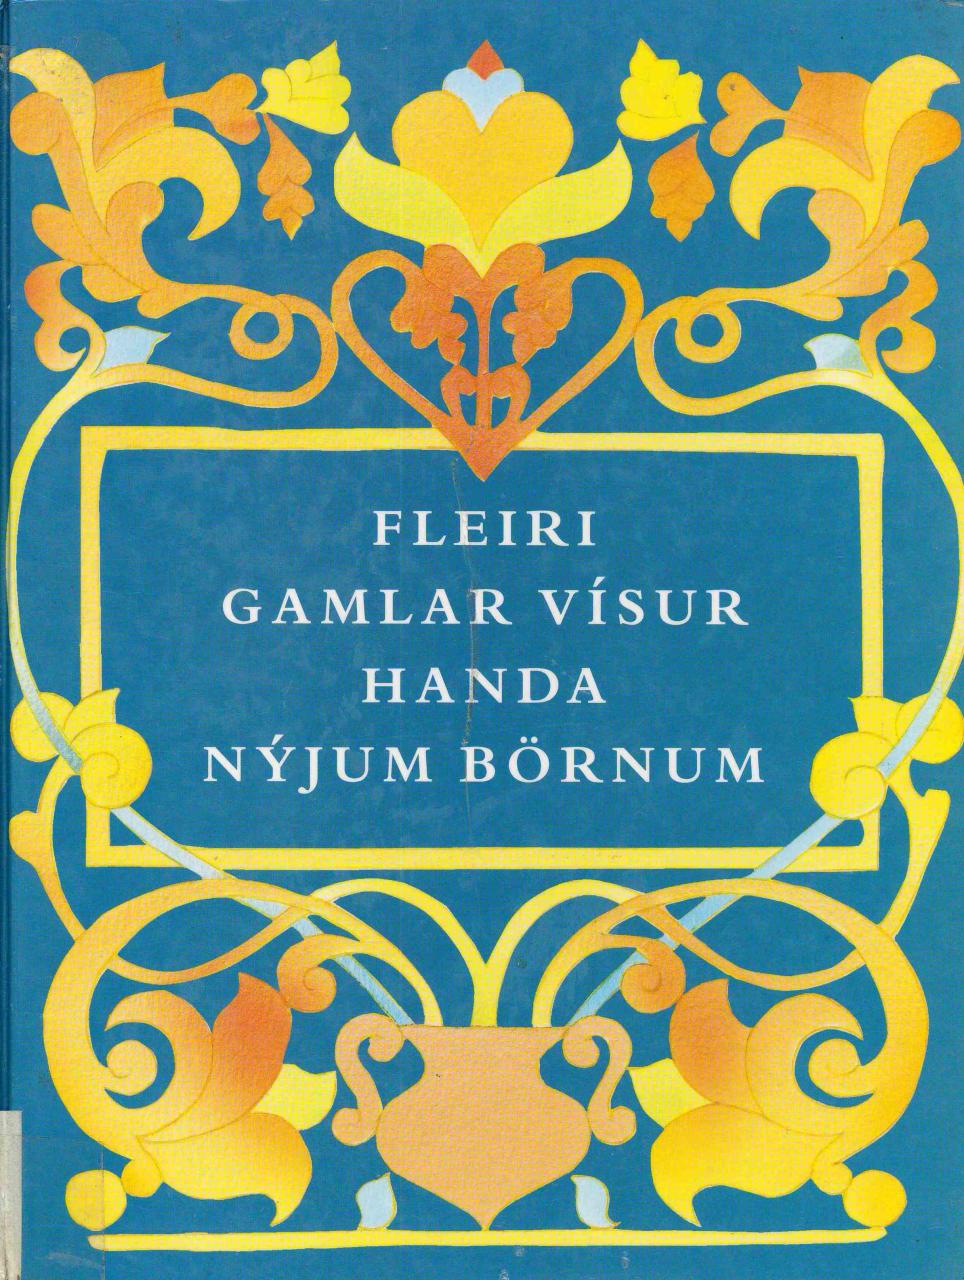 Fleiri gamlar vísur handa nýjum börnum (More old poems for a new kids)